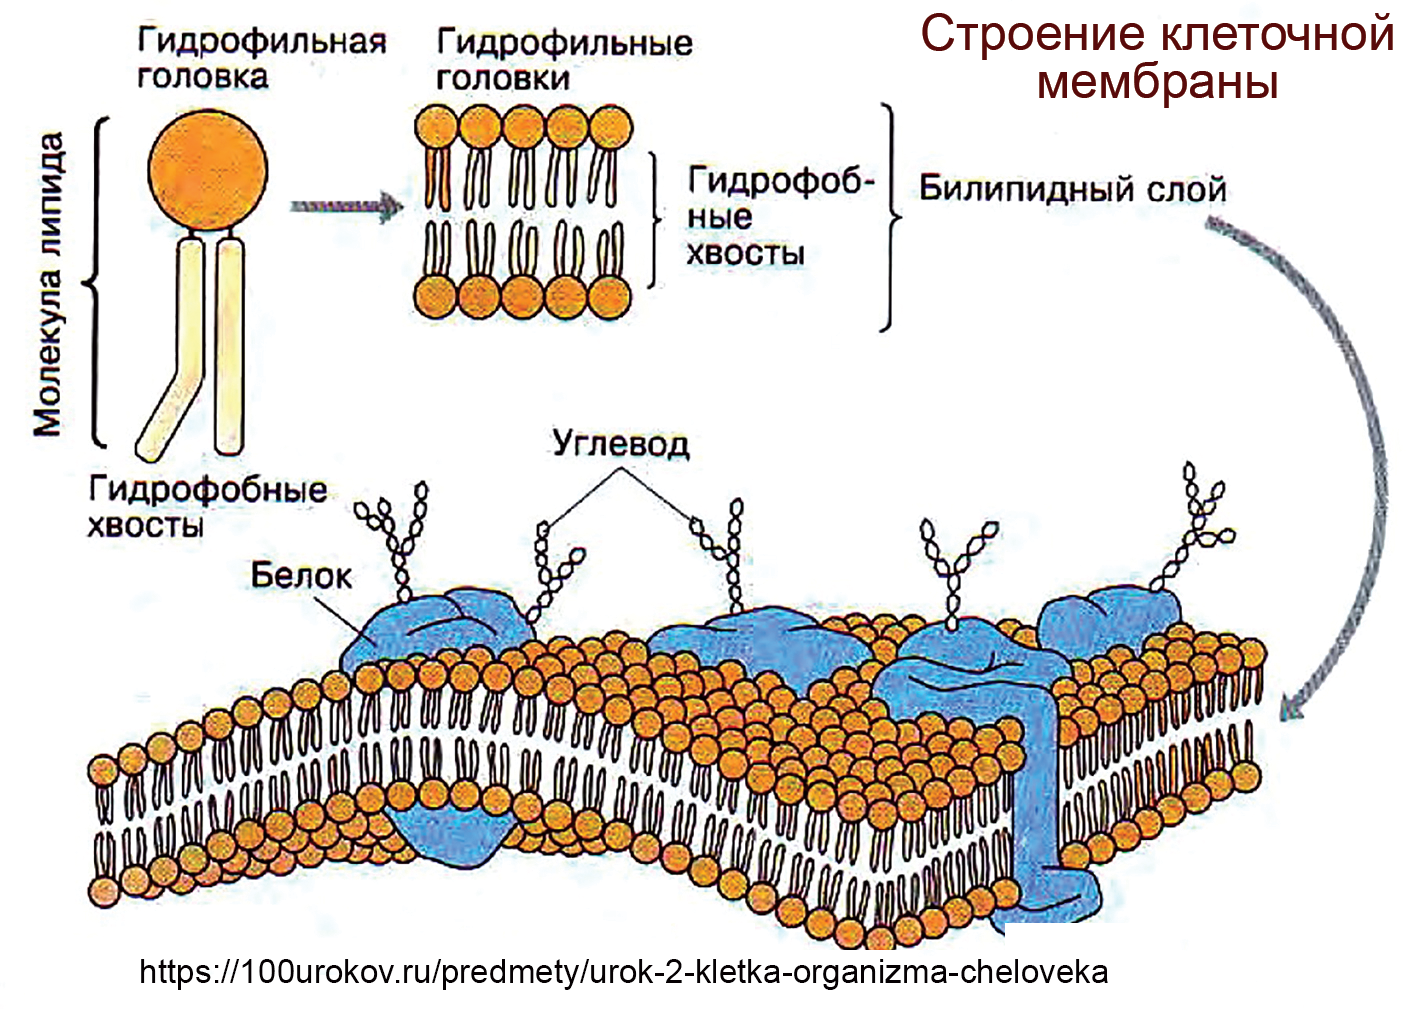 Эукариотическая клетка плазматическая мембрана. Структура клетки плазматическая мембрана. Схема строения плазматической мембраны клетки. Строение фосфолипидов клеточной мембраны. Структура клеточной мембраны плазматическая мембрана.